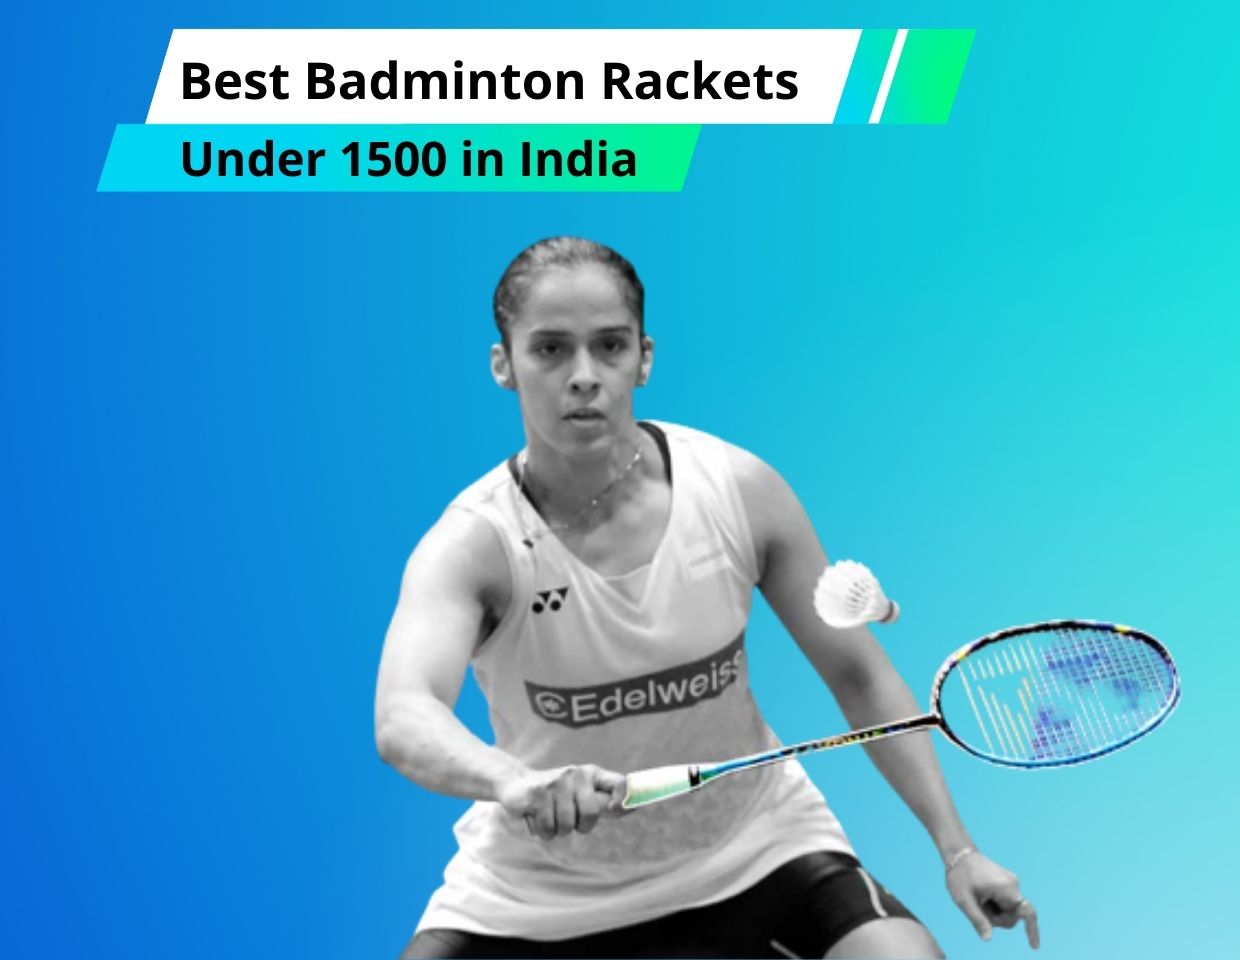 Best Badminton Rackets Under 1500 in India